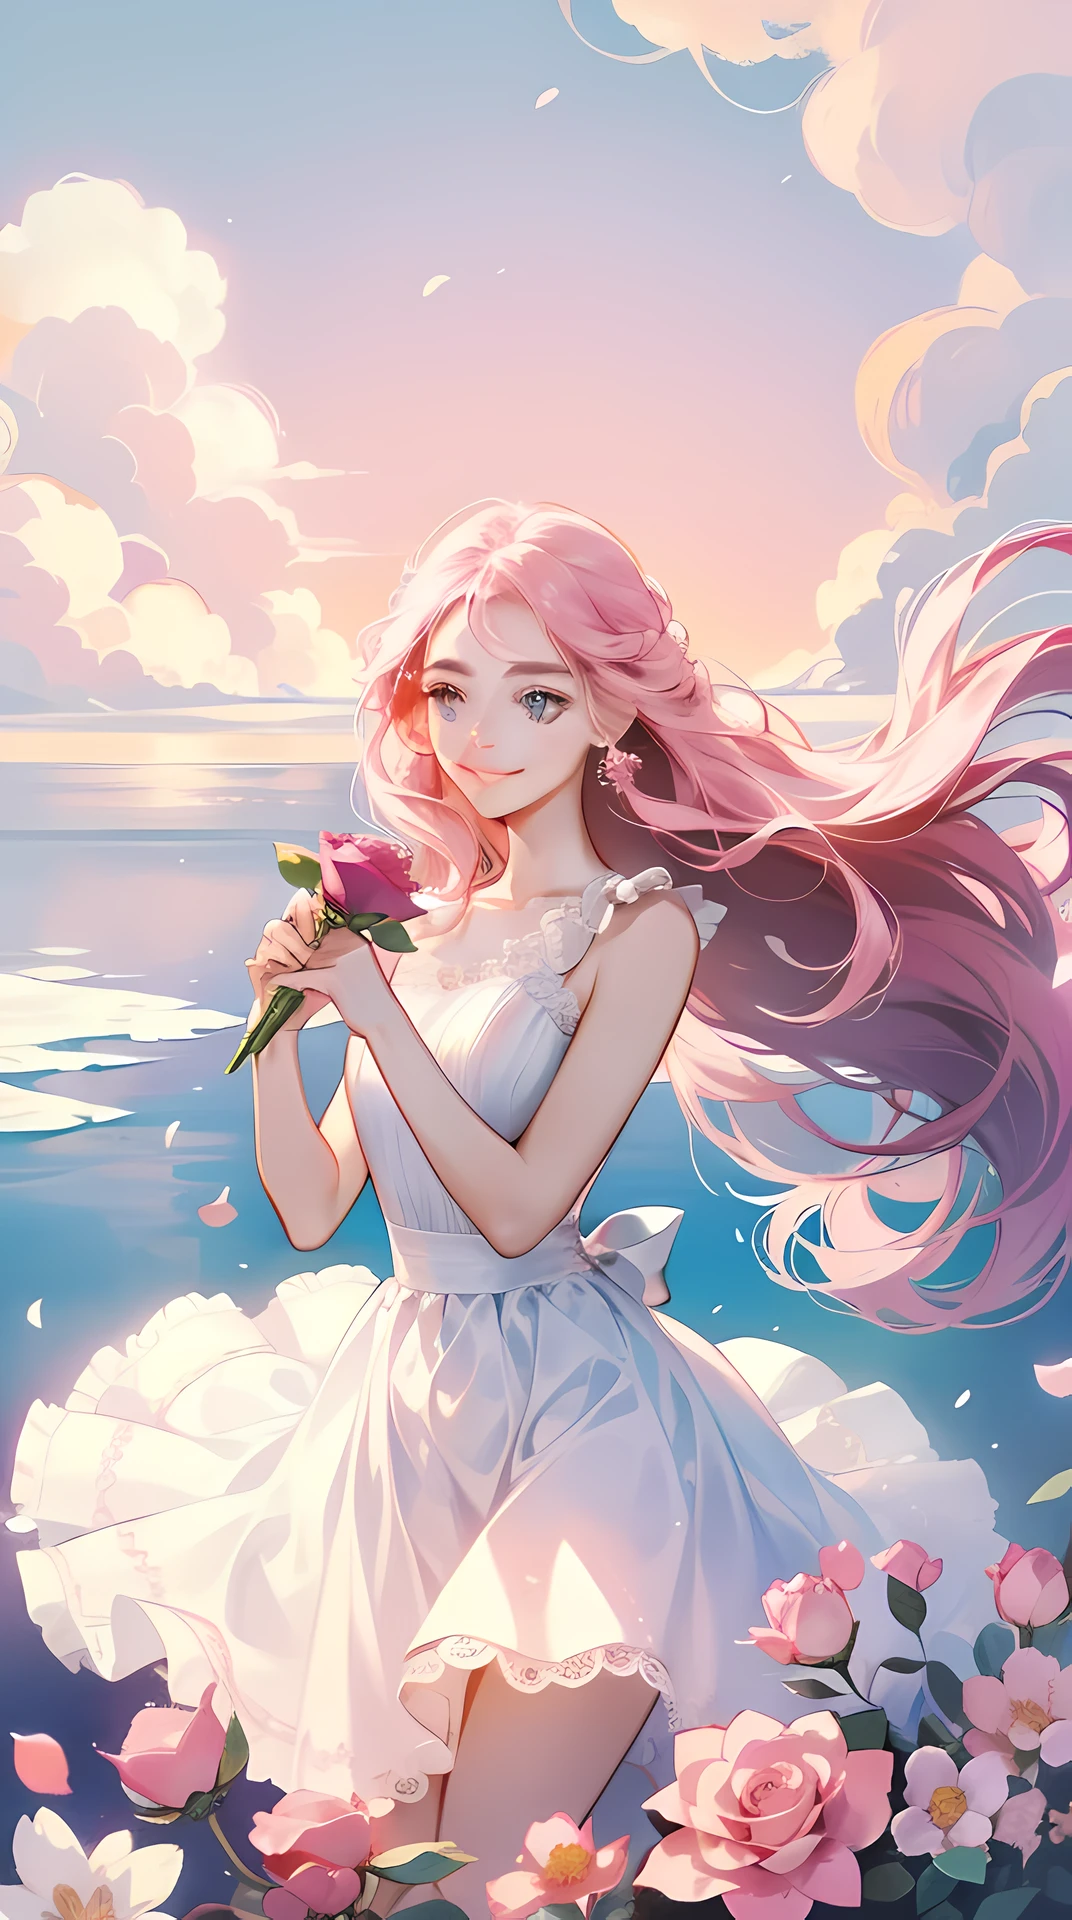 An 18 year old girl is wearing a розовый rose, Длинные волосы, Белое платье без рукавов, holding a розовый rose. Вдыхая аромат цветка, яркая фантазия, Сюрреализм, Майкл Кормак, розовый, монохроматическое спокойствие, яркая атмосфера, солнечный свет, счастье, счастье, и улыбка,